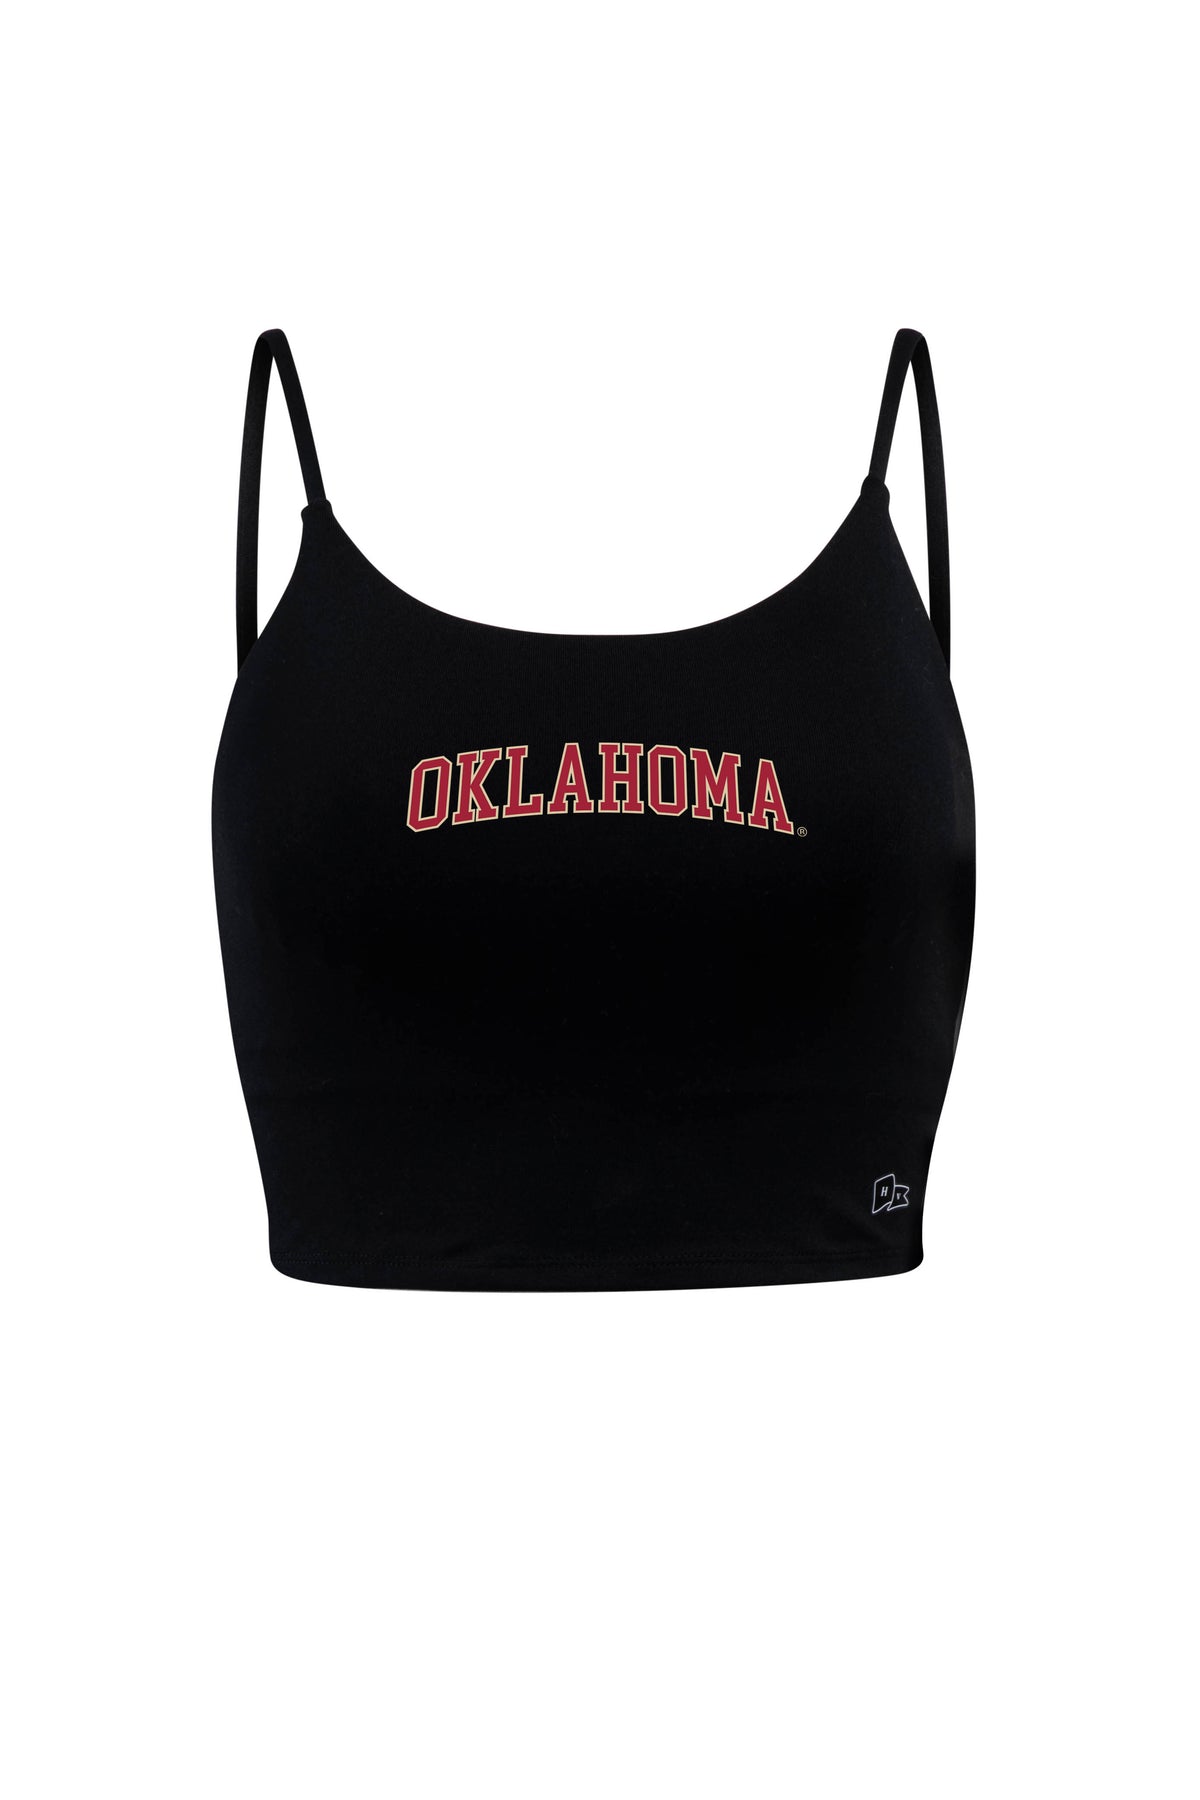 University of Oklahoma Bra Tank Top